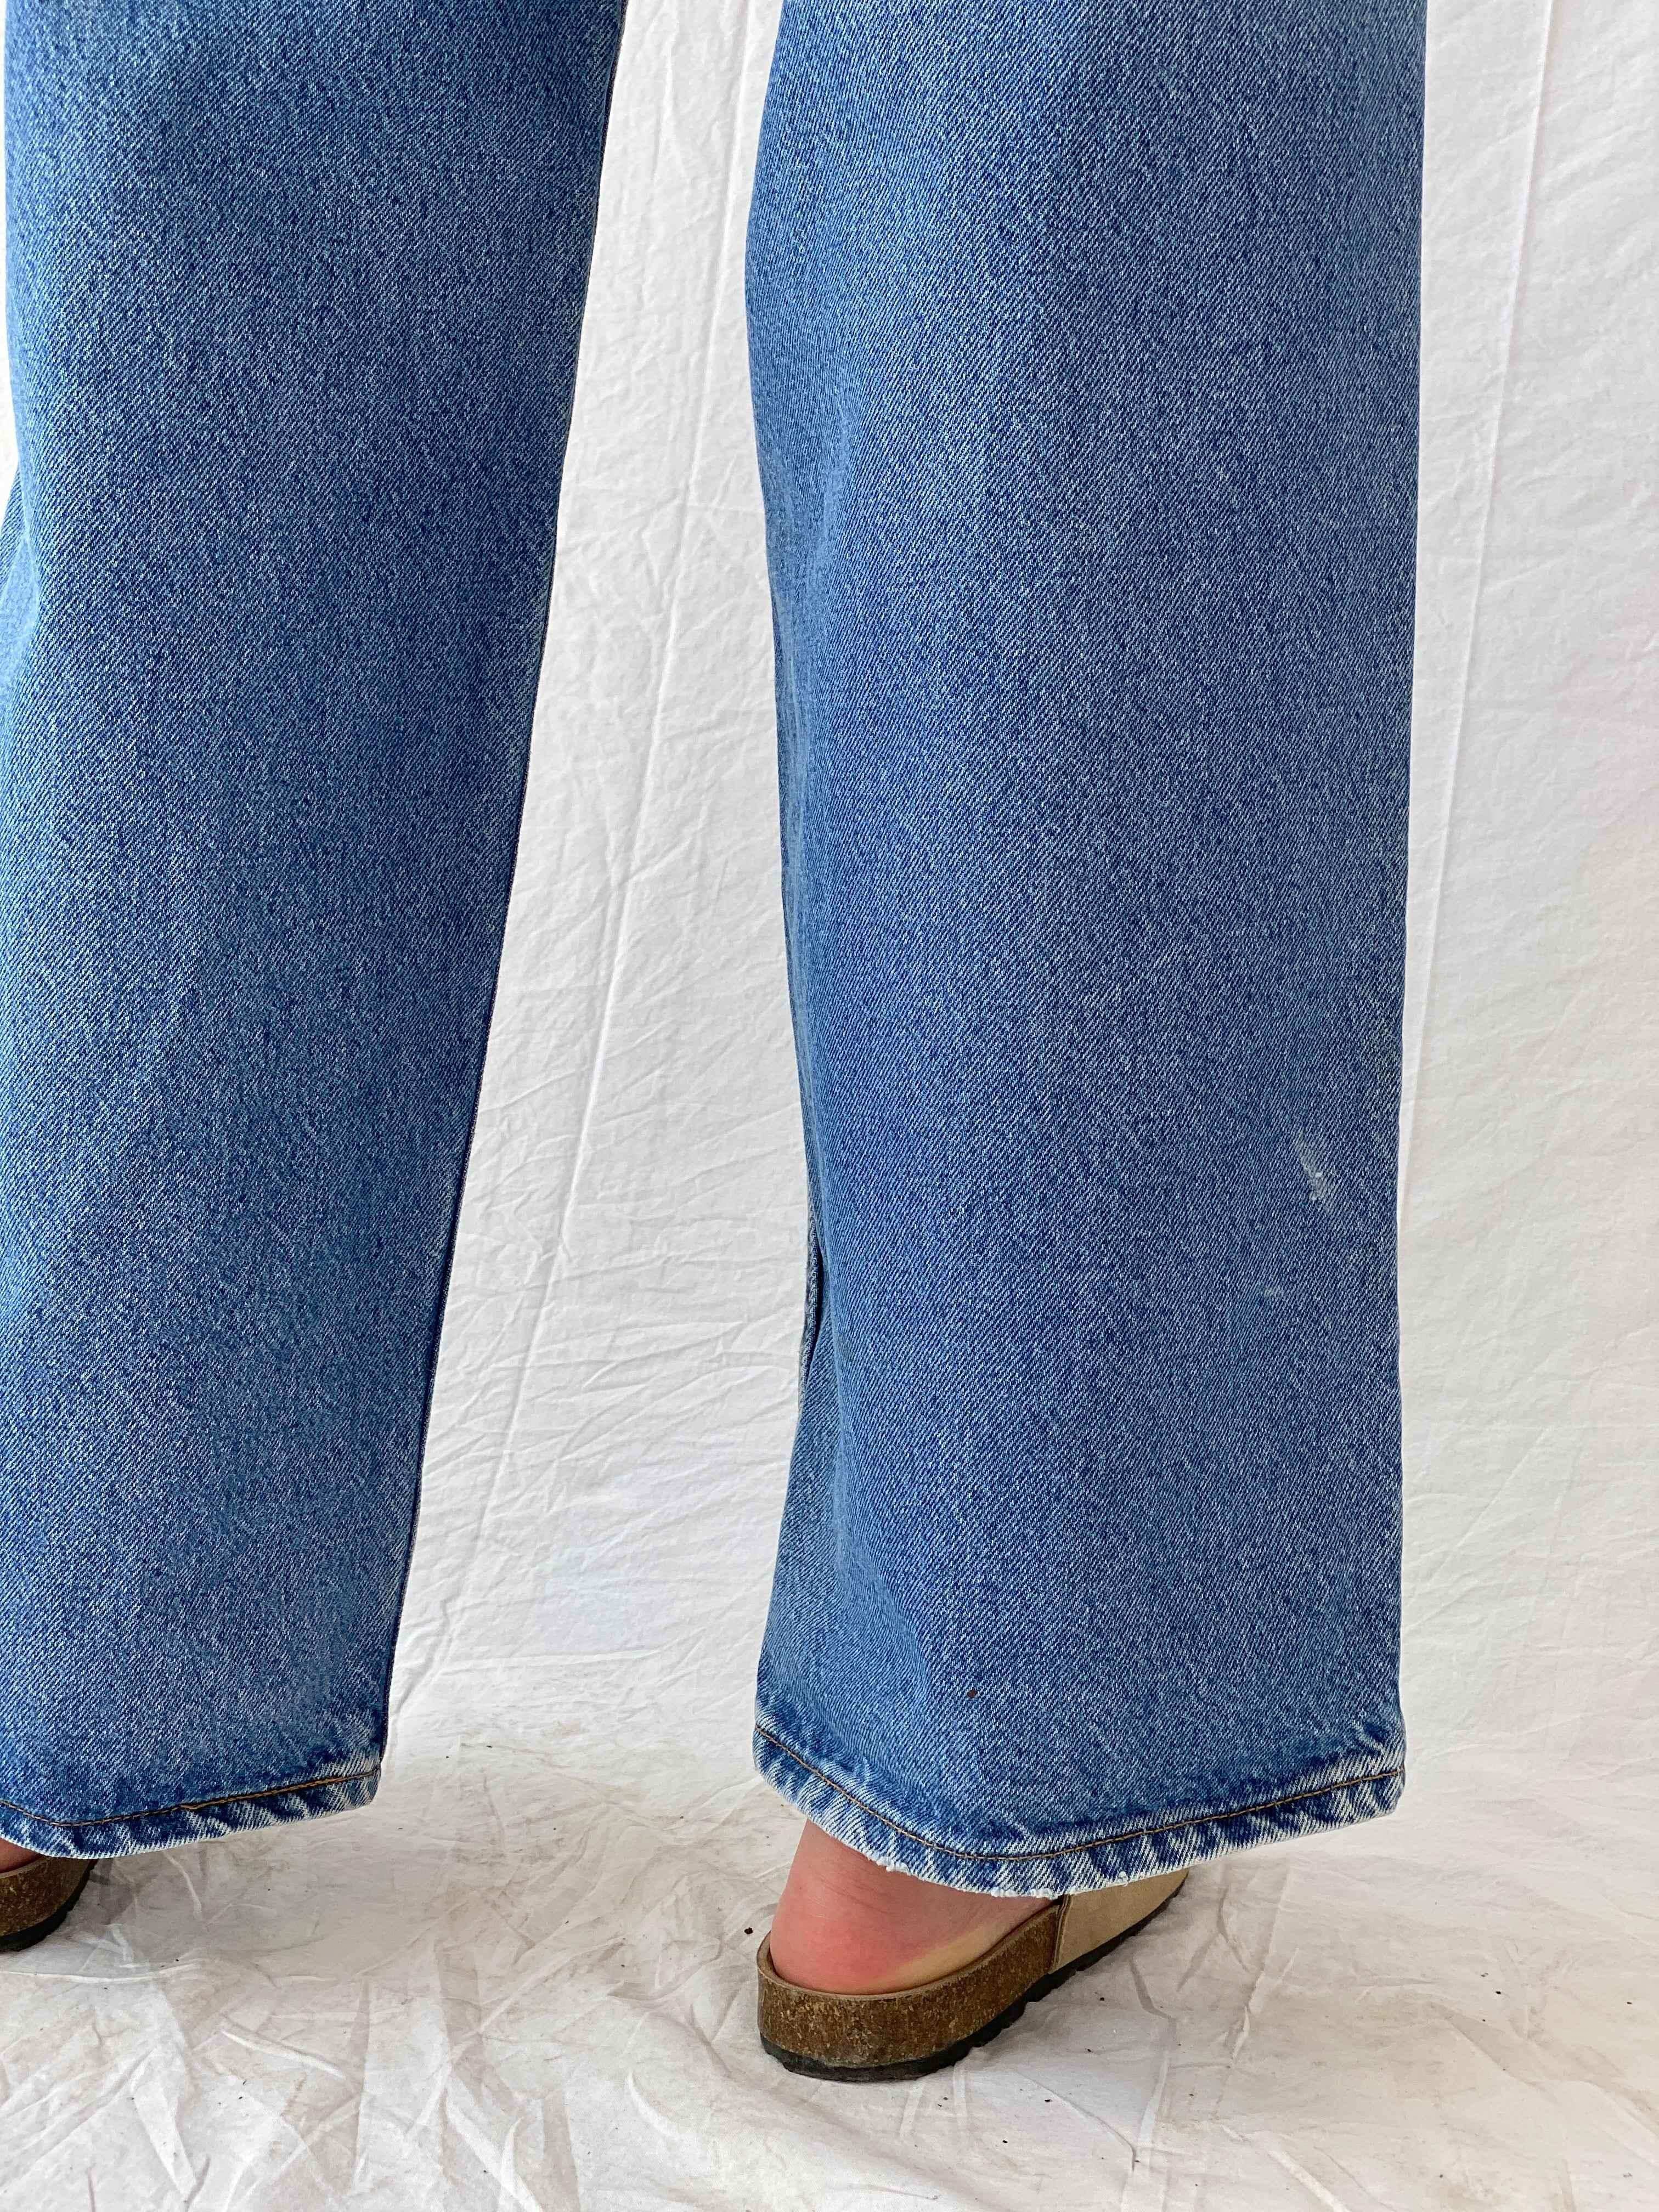 Vintage Levi’s Jeans - Balagan Vintage Jeans 90s, levis jeans, Mira